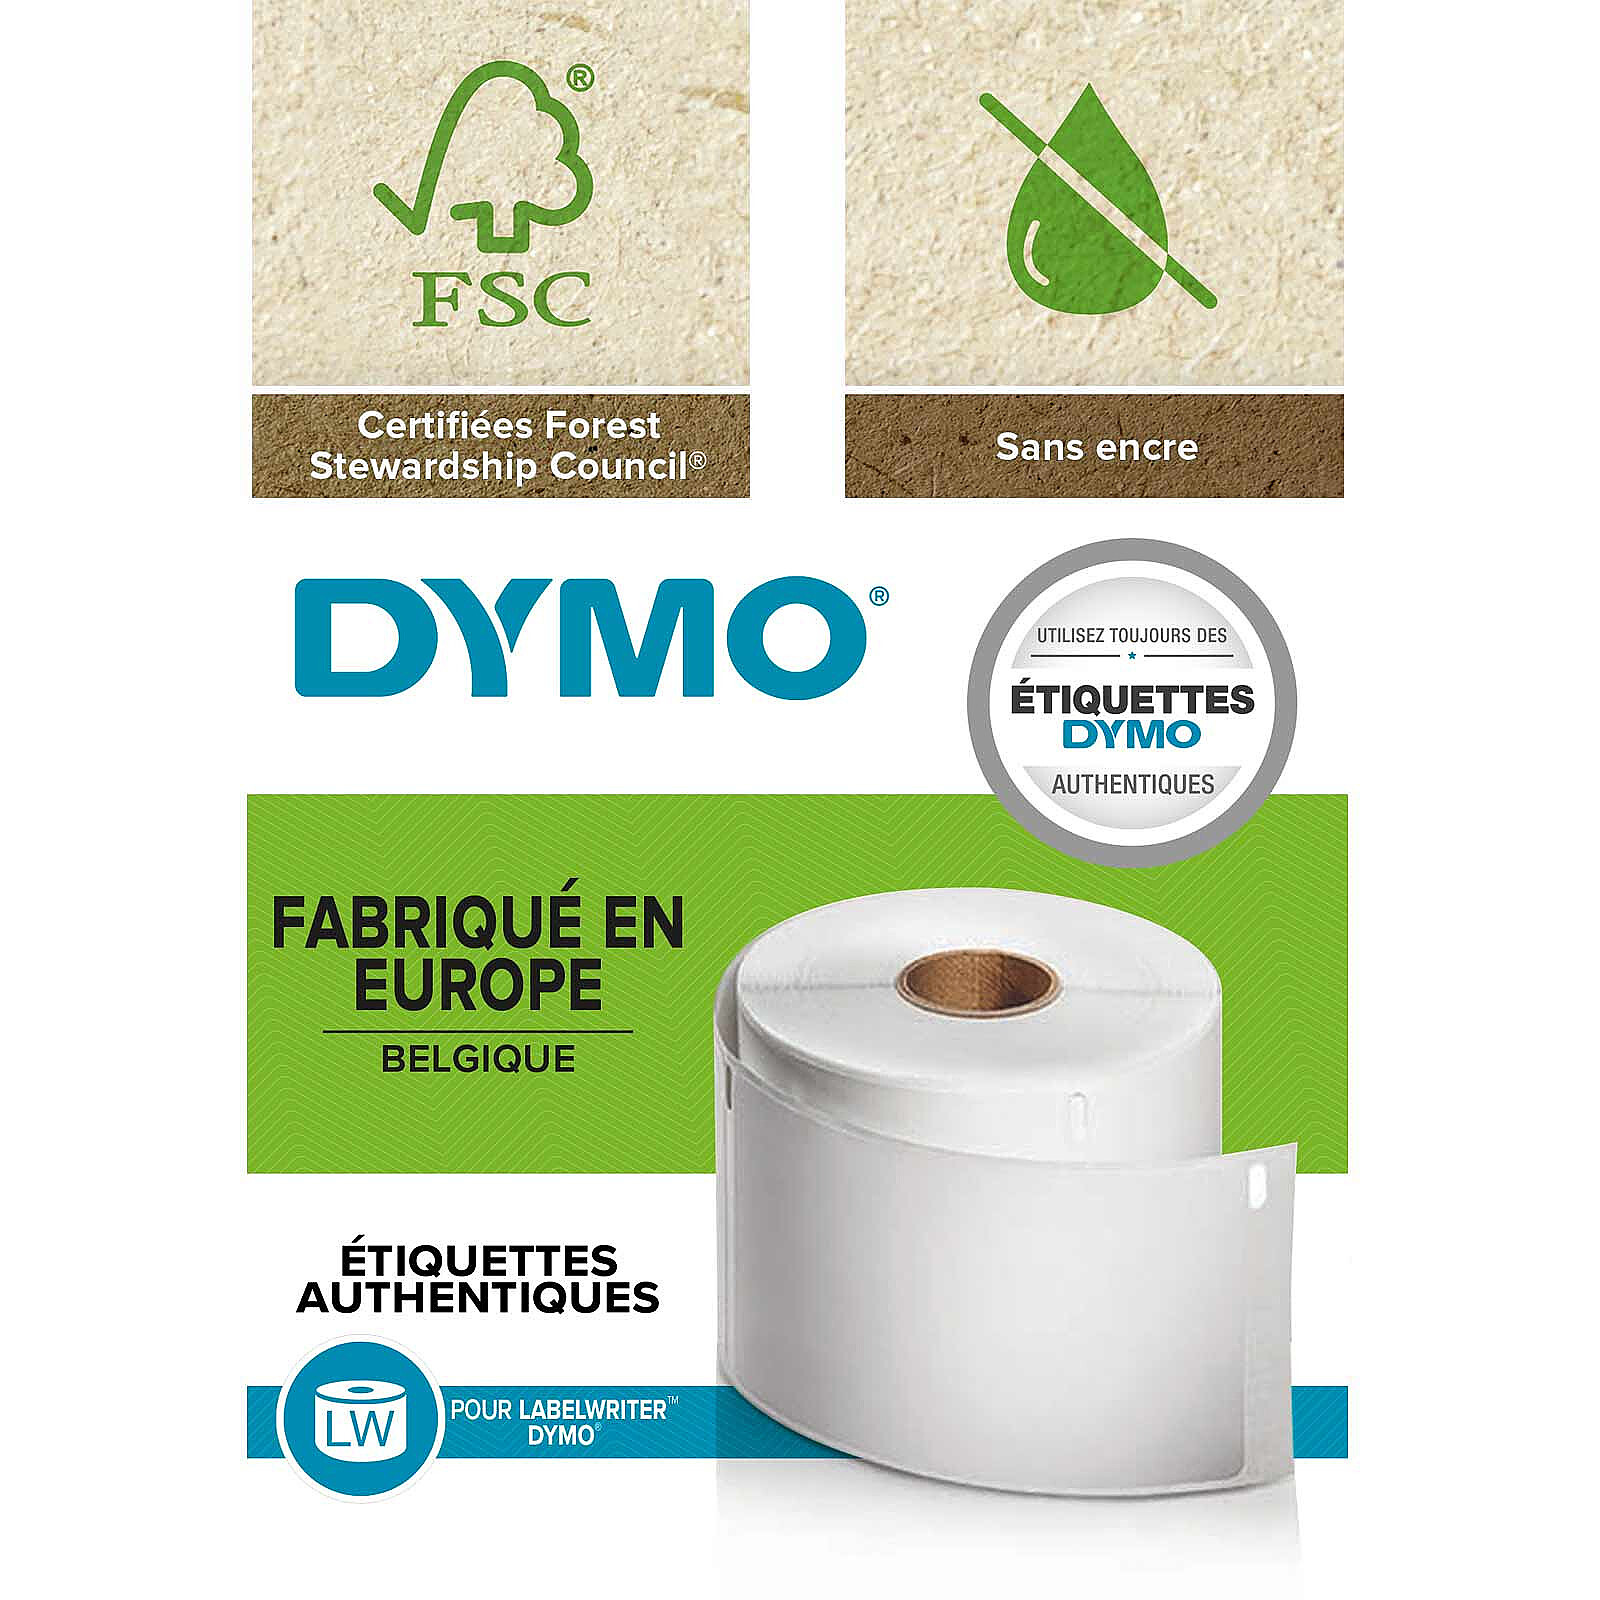 DYMO LW rouleau d'étiquettes universelles permanentes blanches - 25 x 54 mm  - Papier imprimante - LDLC